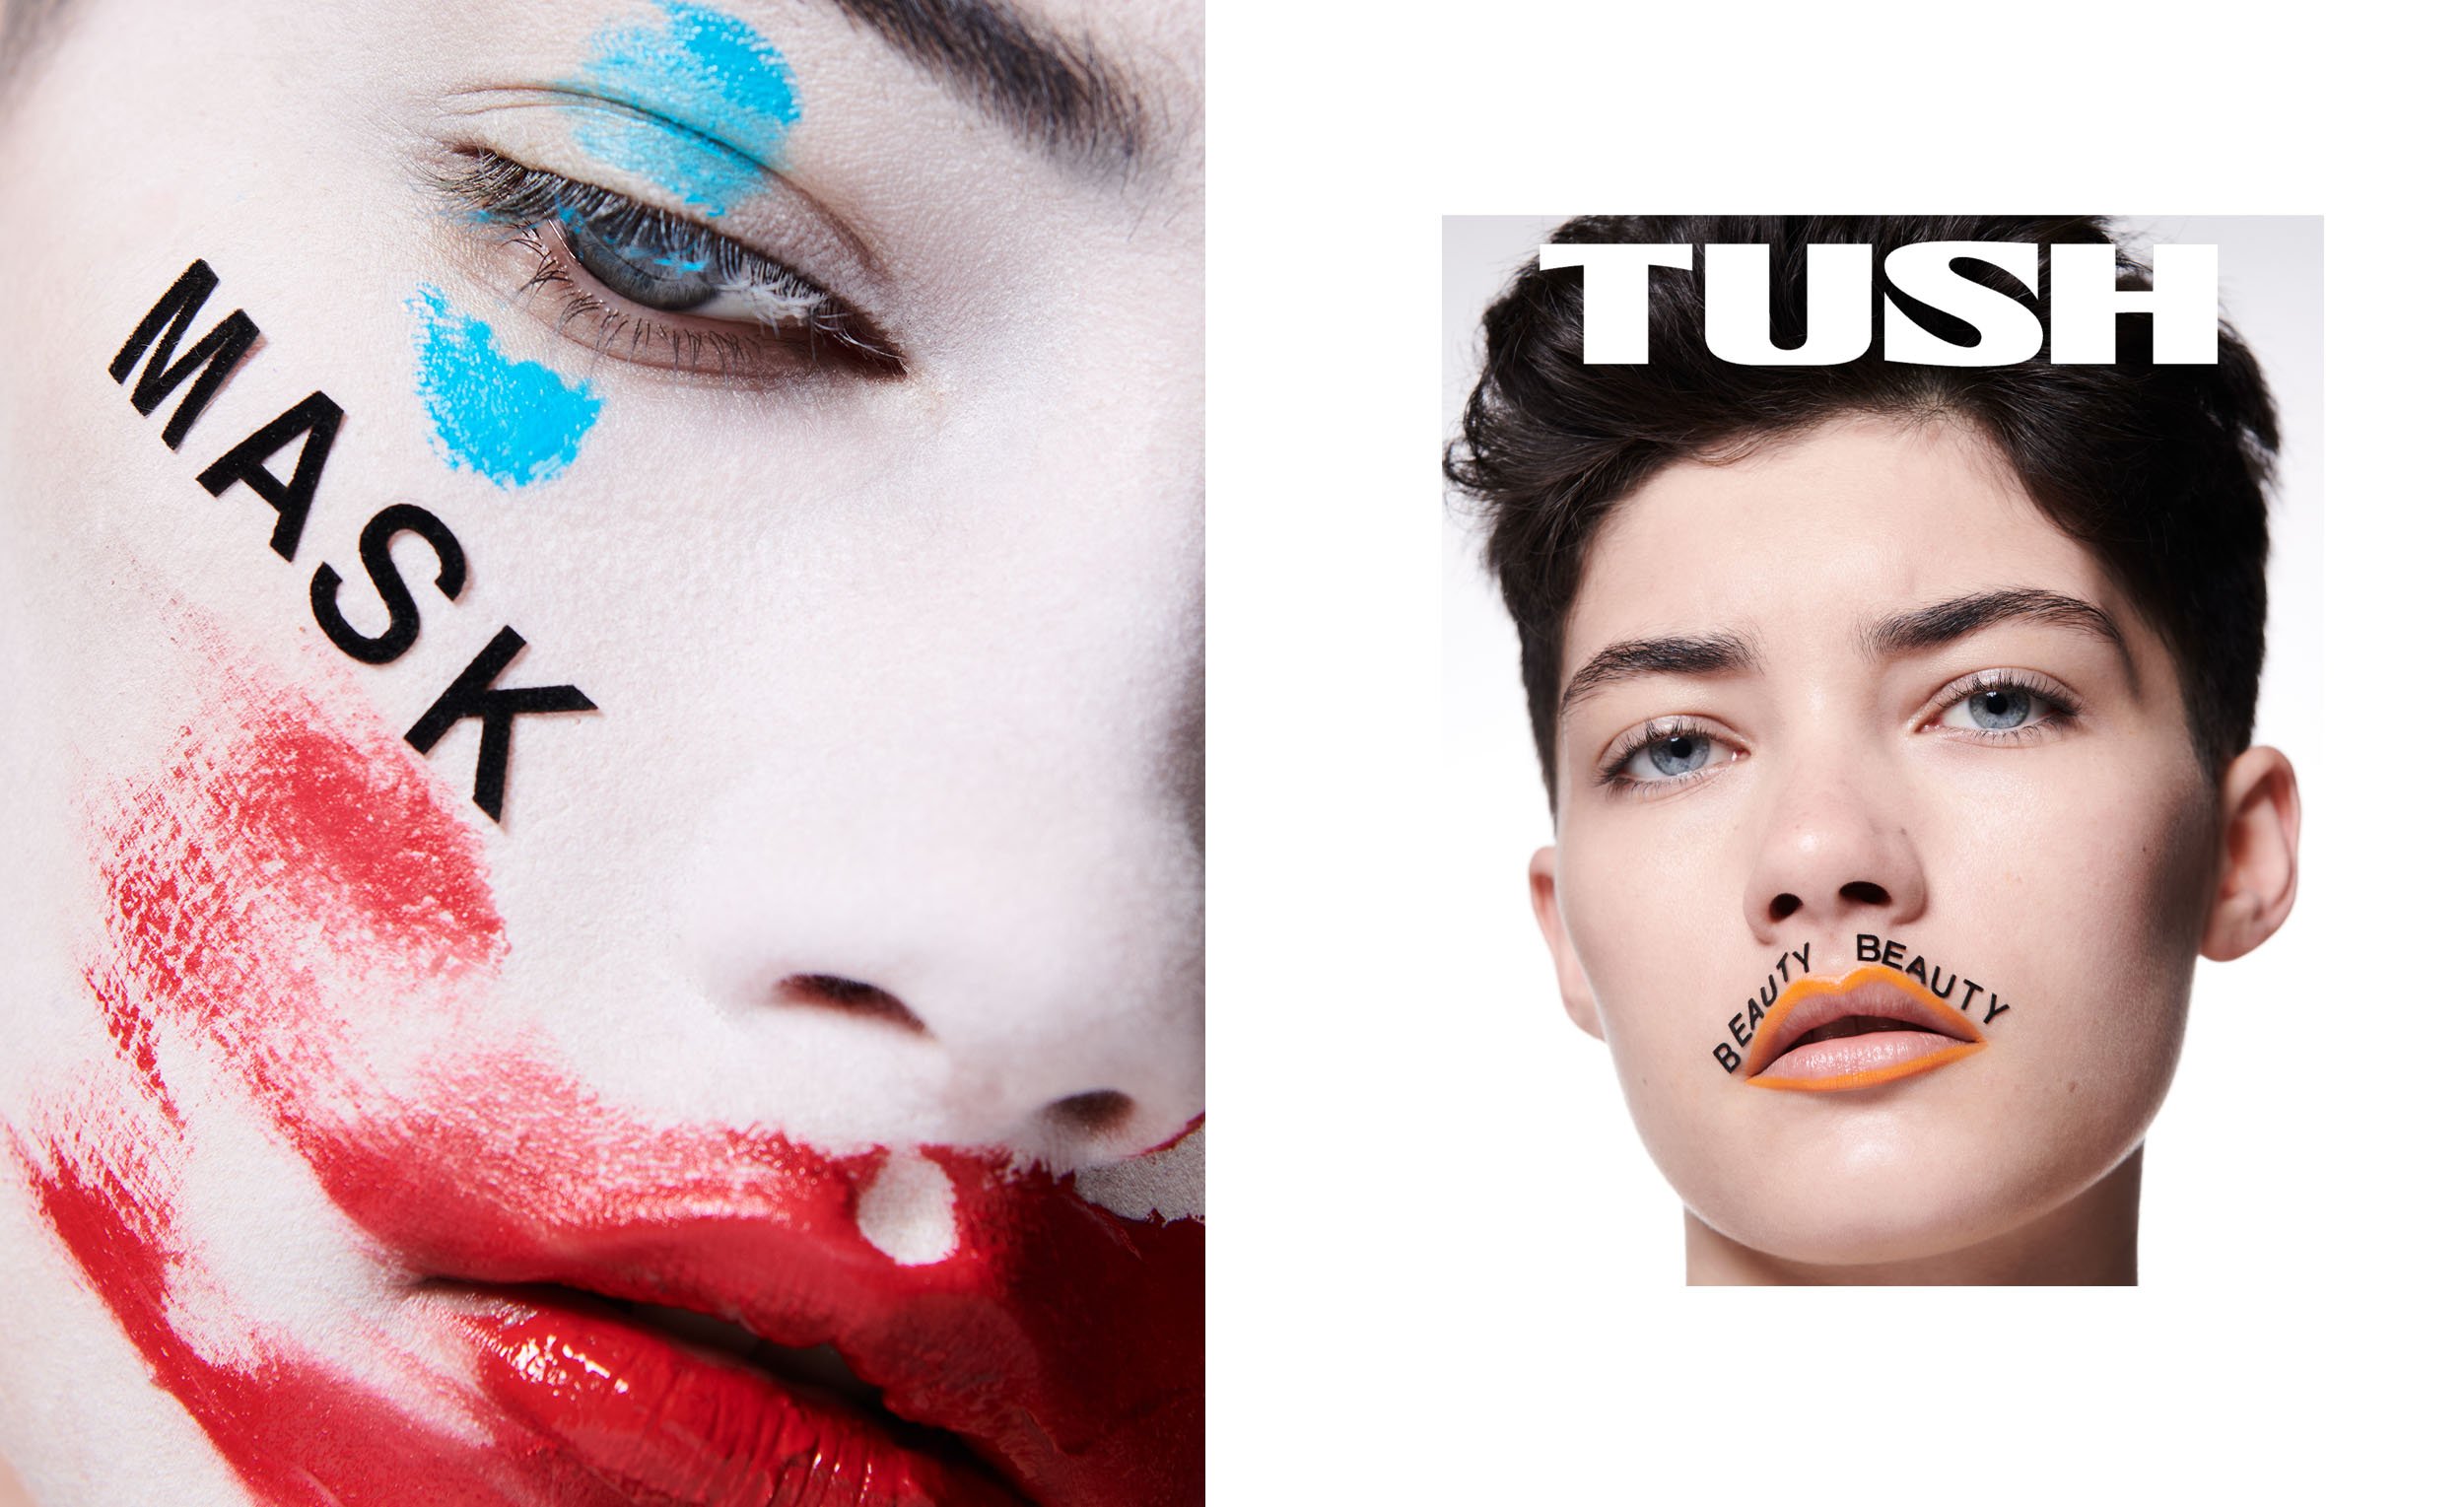 TUSH magazine